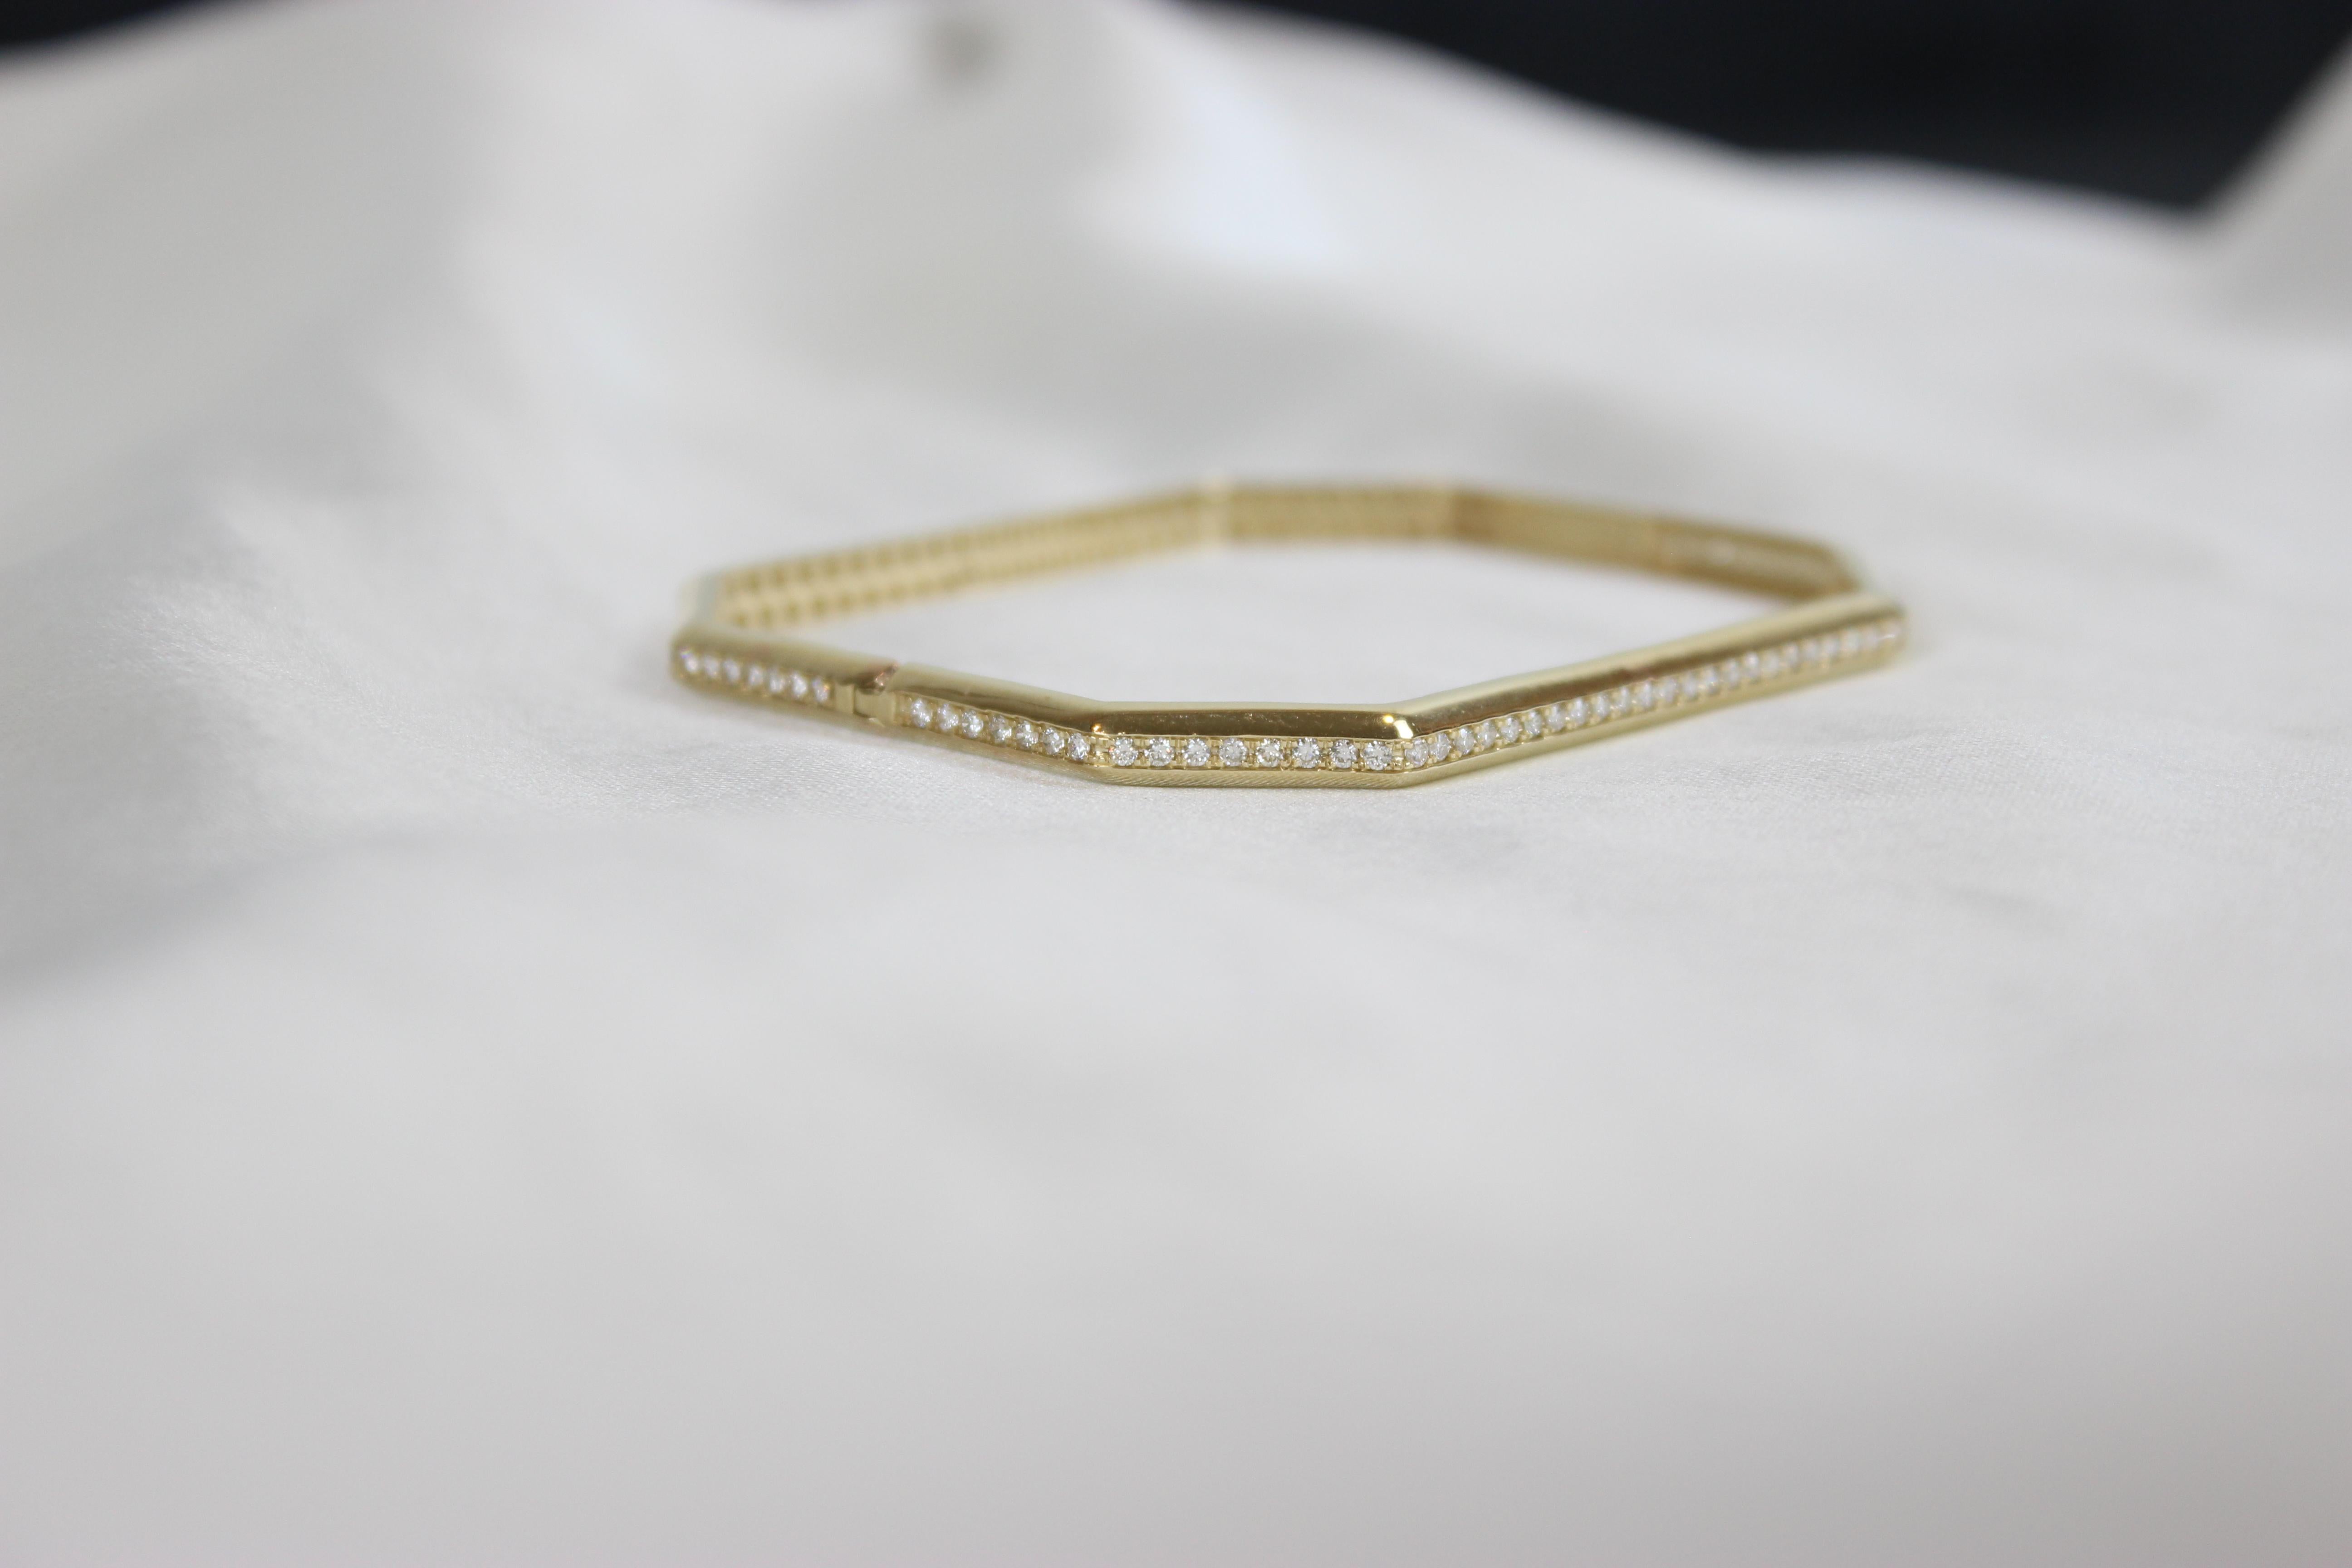 Octagonal Shape Bangle Bracelet Set in 18k Solid Gold For Sale 2